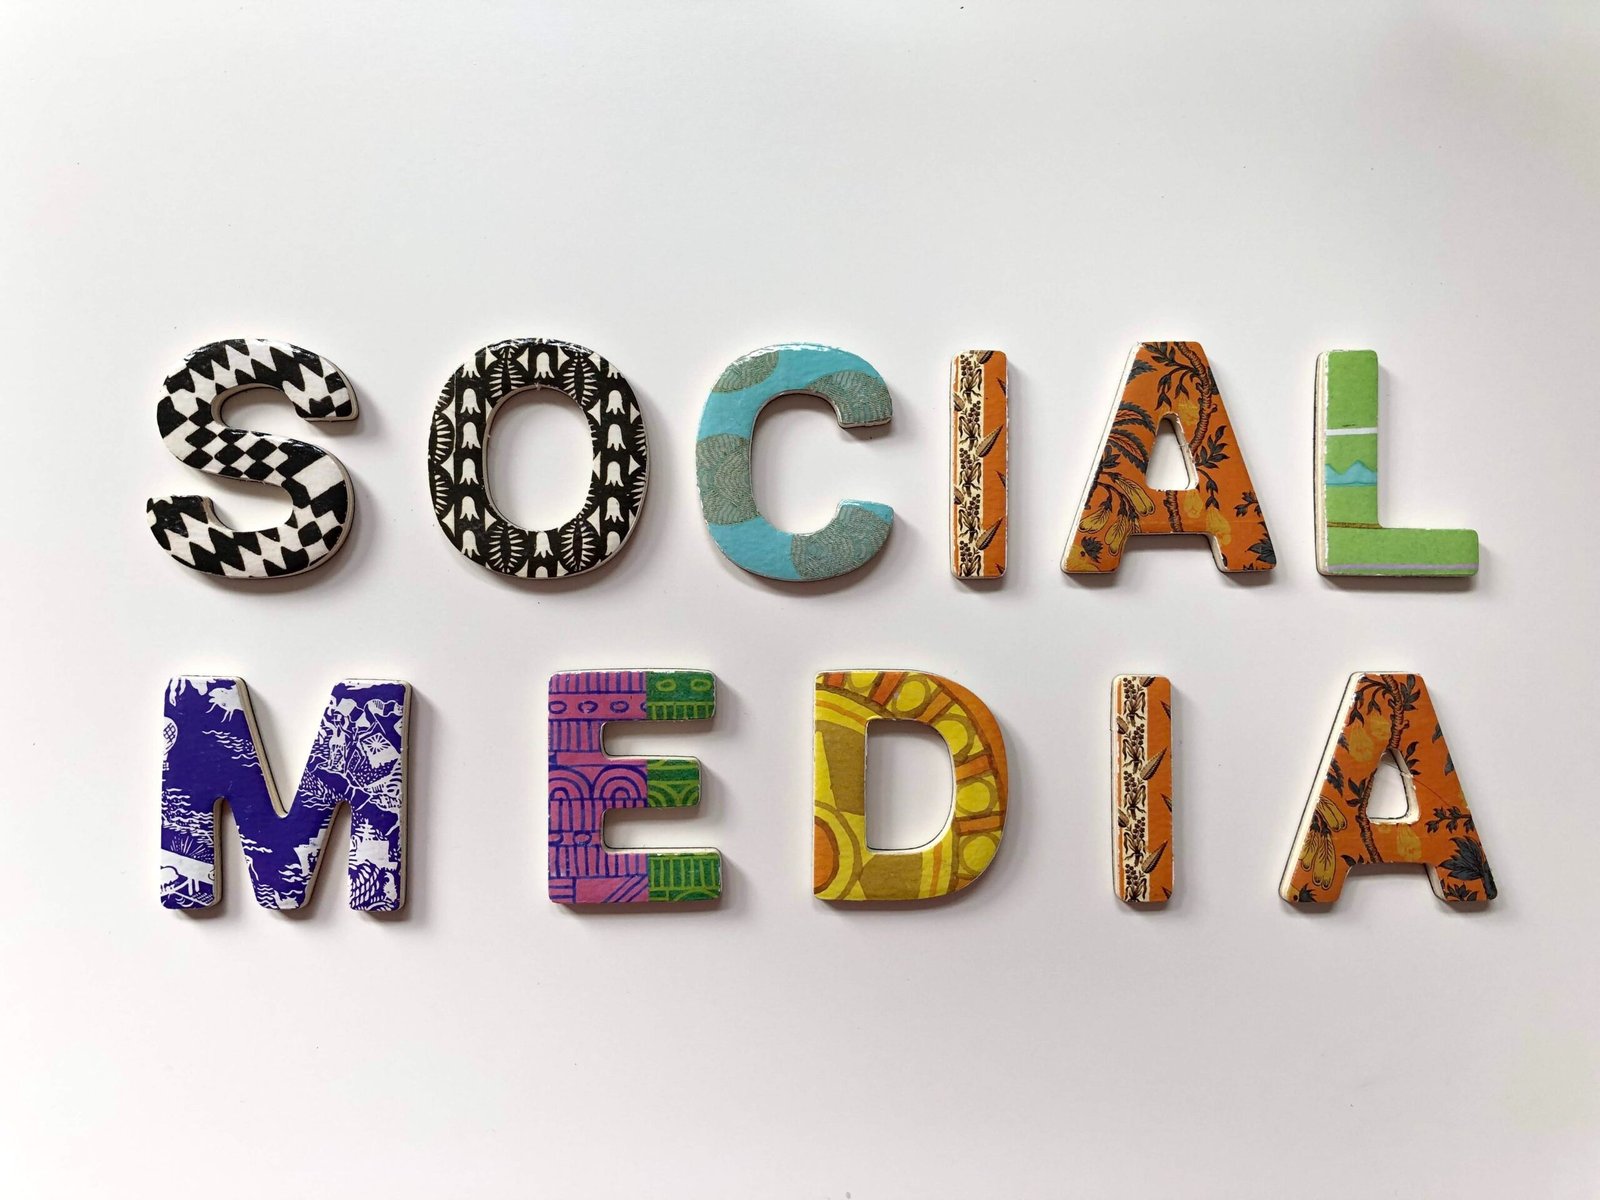 Importance Of Social Media In Digital Marketing